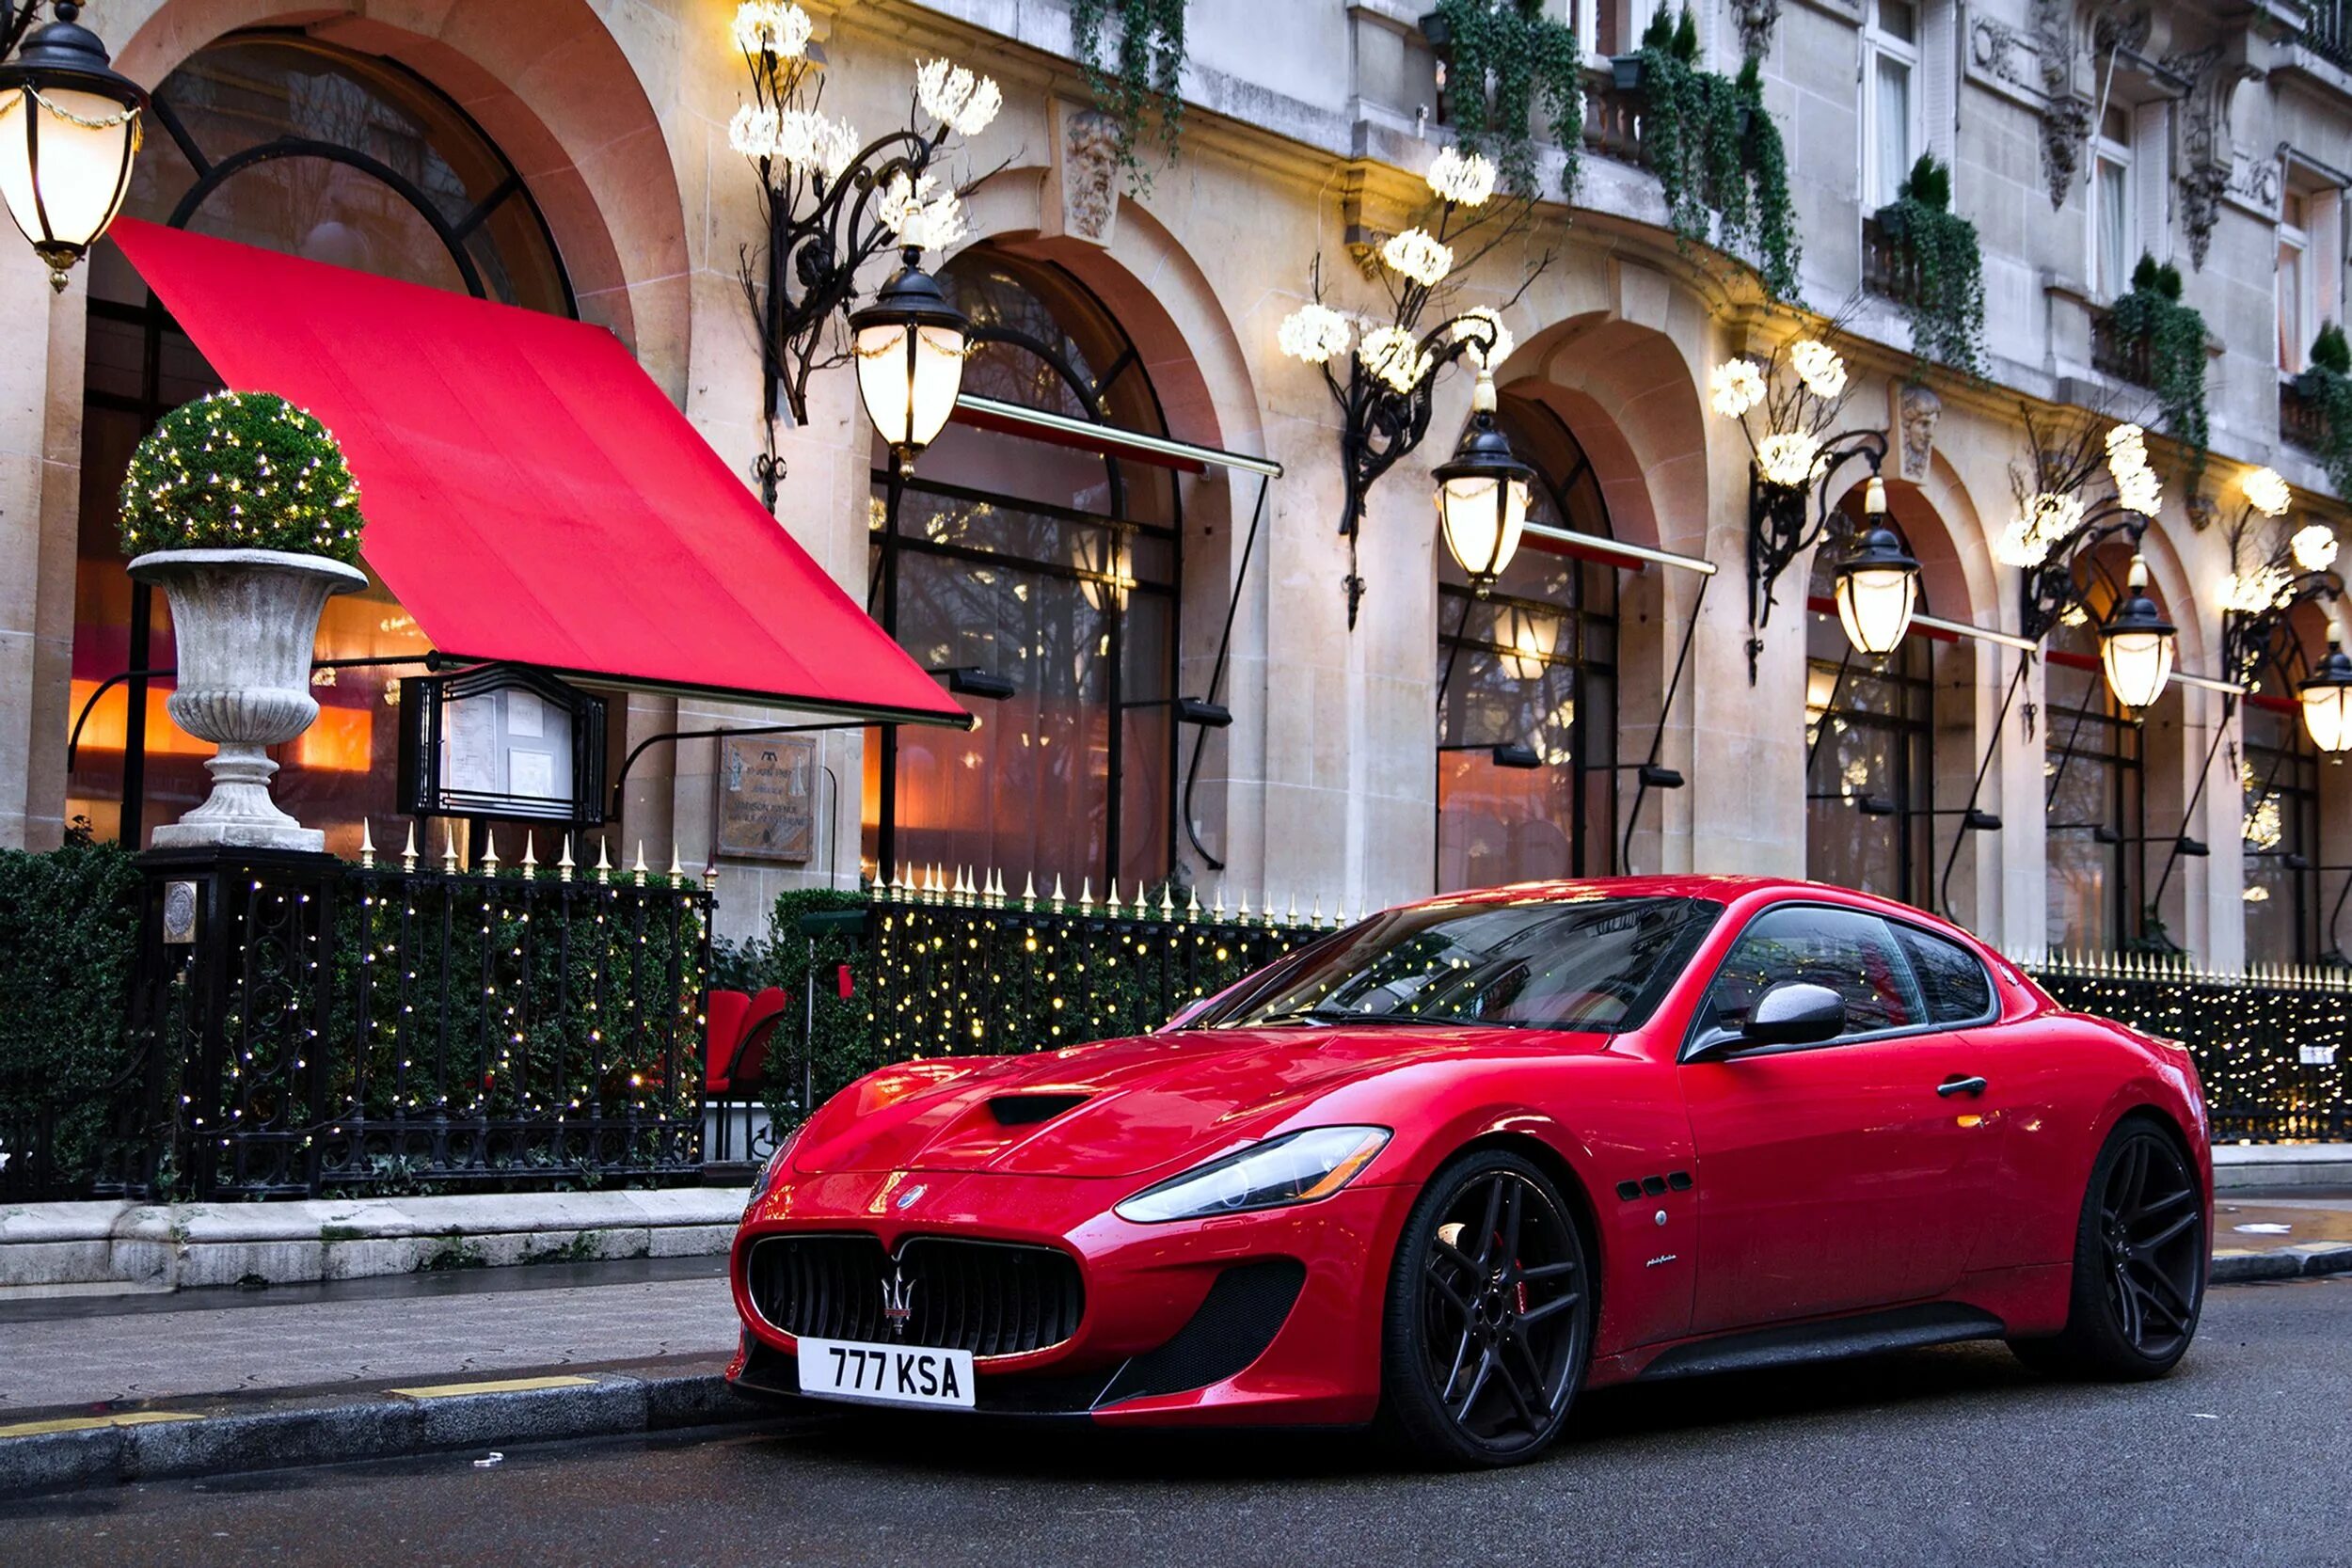 Автомобиль на г. Мазерати ГРАНТУРИЗМО. Красный Мазератти. Maserati GRANTURISMO красный. Мазератти 2013 купе красный.